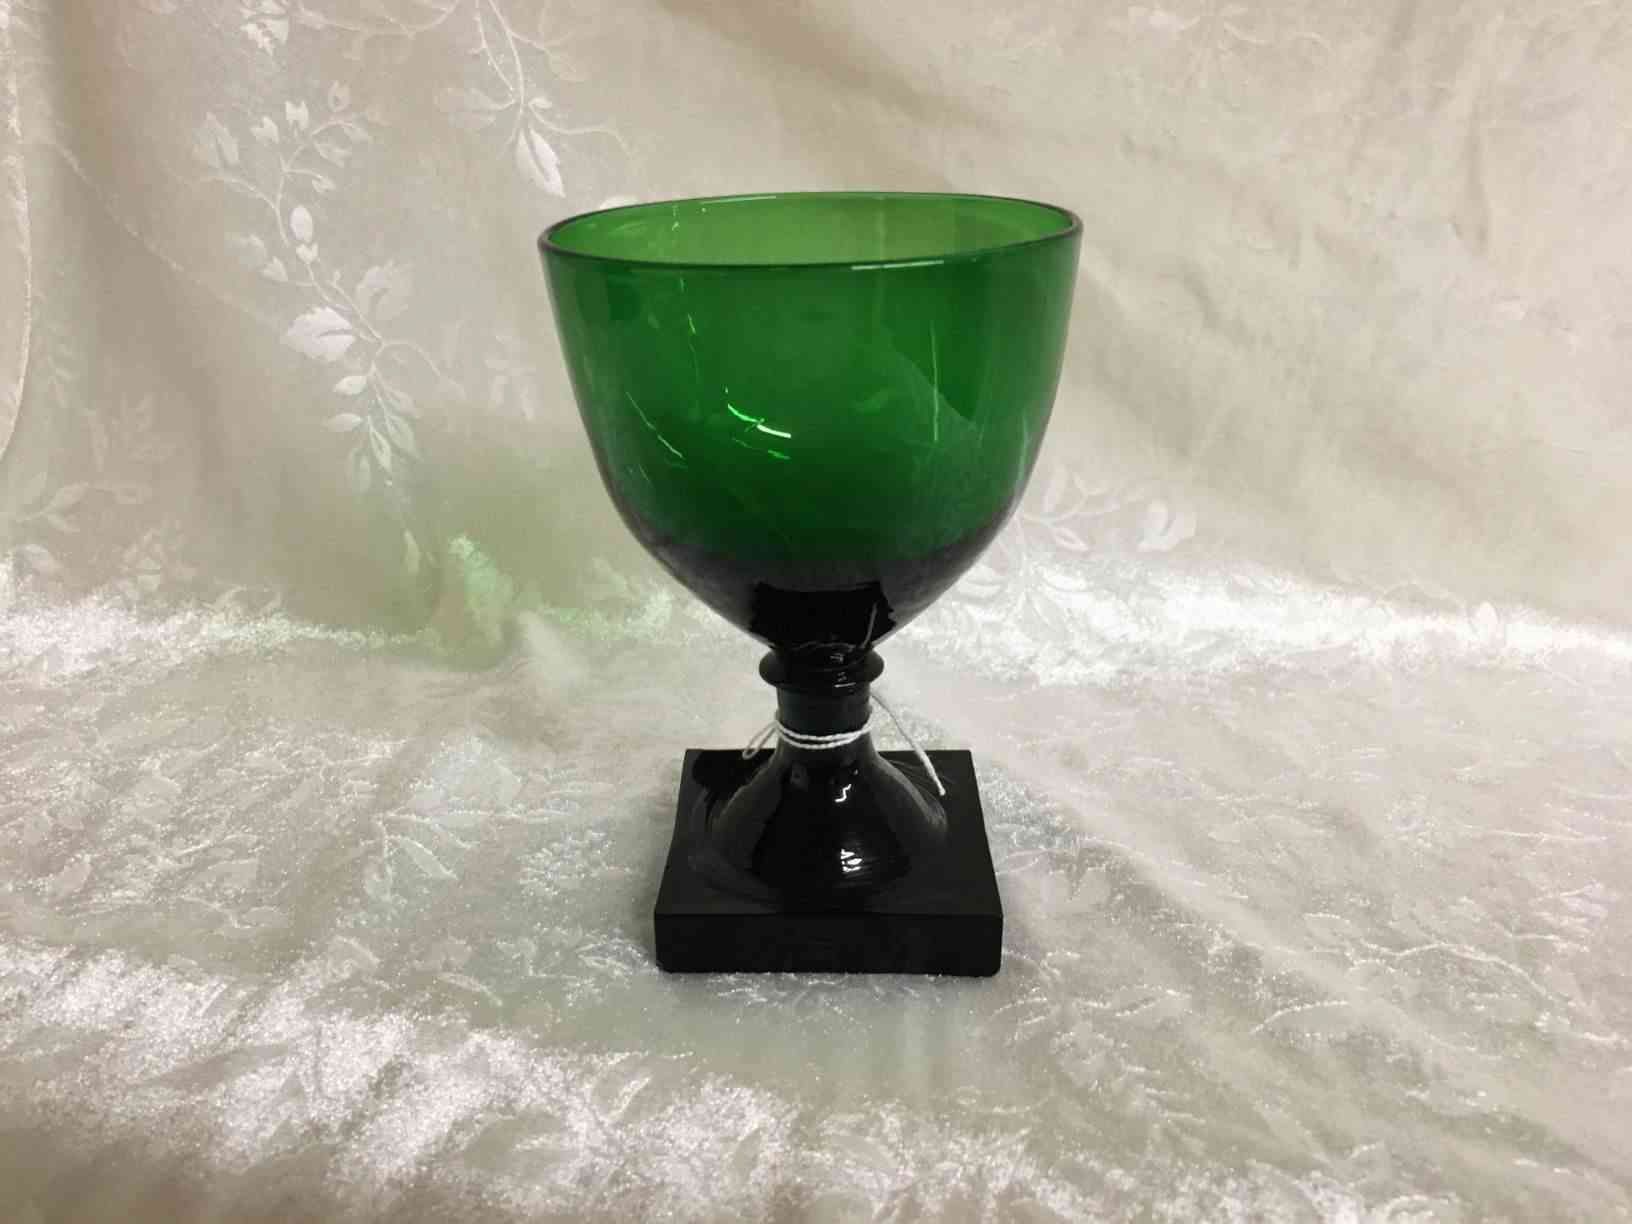 Holmegaard - Gorm den Gamle eller Viking  grønt ølglas 13 cm i perfekt stand. Pris: 750,- Kr. Glas fremstillet i mørkegrønt glas med kraftig firkantet fod, slebet firkantet eller presset i form, anhæftet mundblæst kumme. Bunden har opstukket "blomst" med runde kronblade. Formen "Skålform" er fra 1900, senere i 1920 udførtes de i mørkegrønt glas blandt andet til glasgrosserer Wiggo Dahl der solgte dem som "Gorm den Gamle". Holmegaard overtog senere forhandlingen af glassene og solgte dem som "Viking". Kastrup har en lignende serie kaldet Emma, dette er dog med slibninger i kummen.